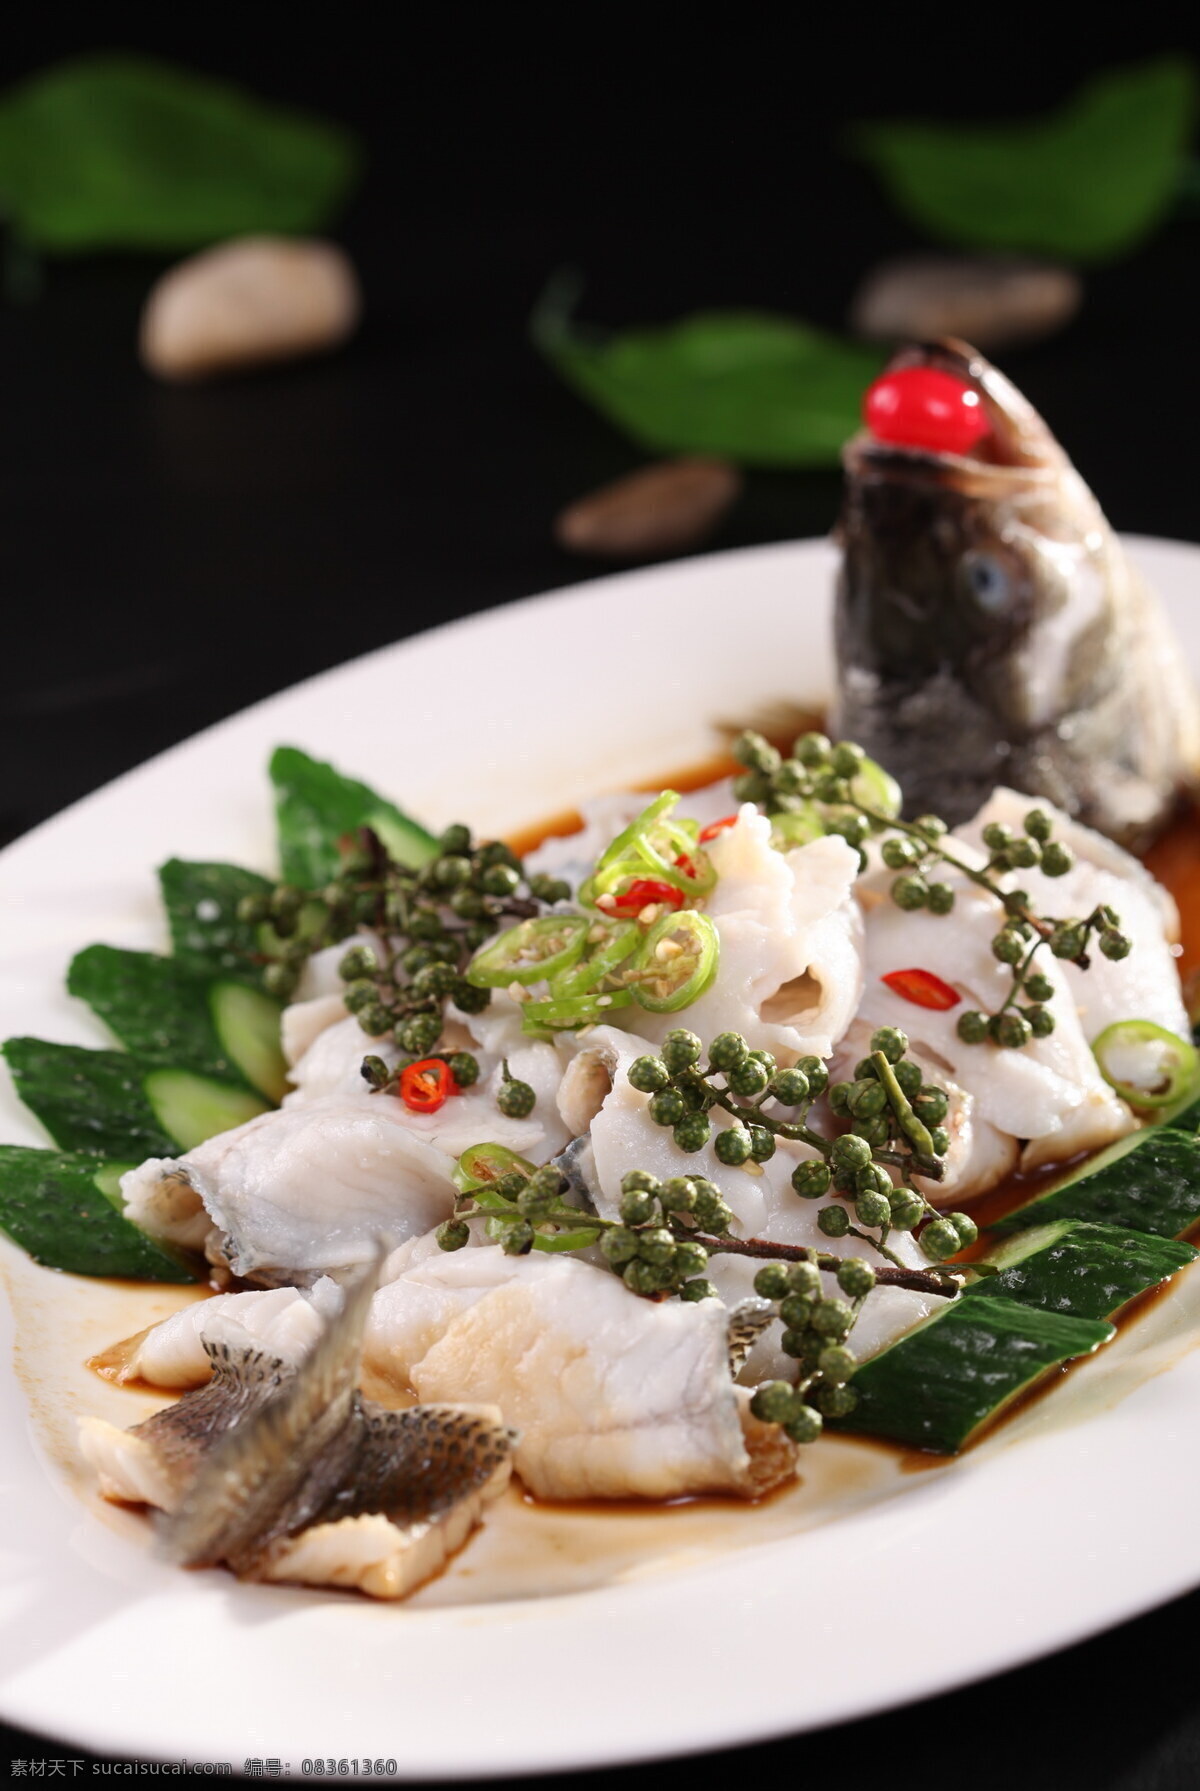 鲜花椒鲈鱼 咸鱼 鲜鱼 凉菜 热菜 开胃菜 美食 传统 中餐 传统美食 餐饮美食